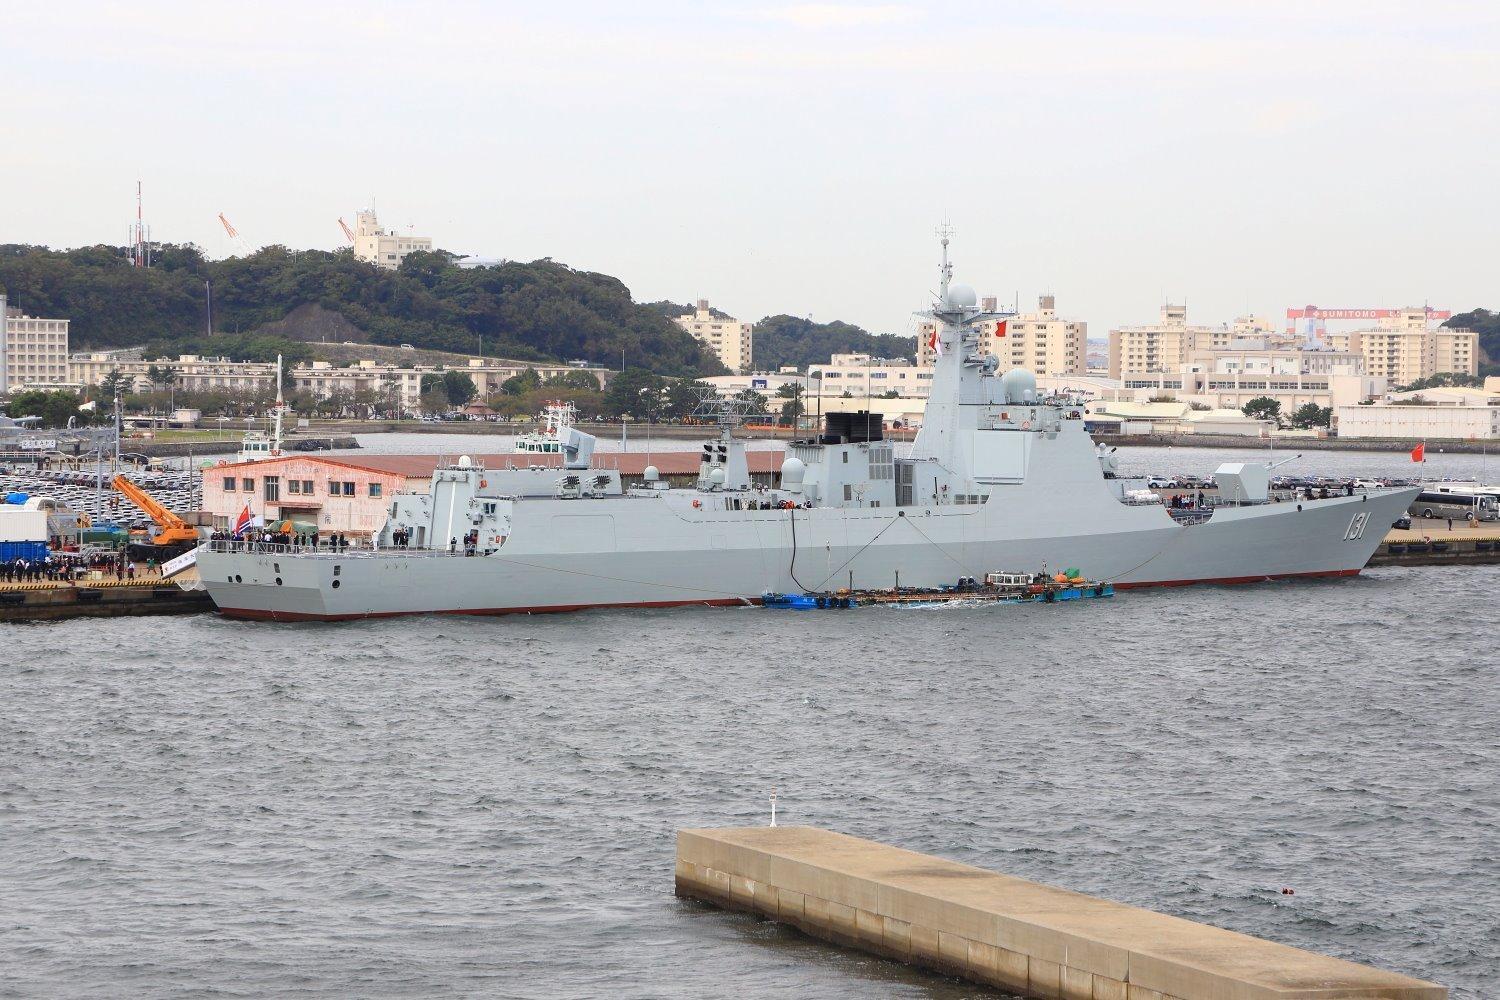 太原舰抵达日本!中国海军时隔10年再访日,日本中将亲自到场迎接